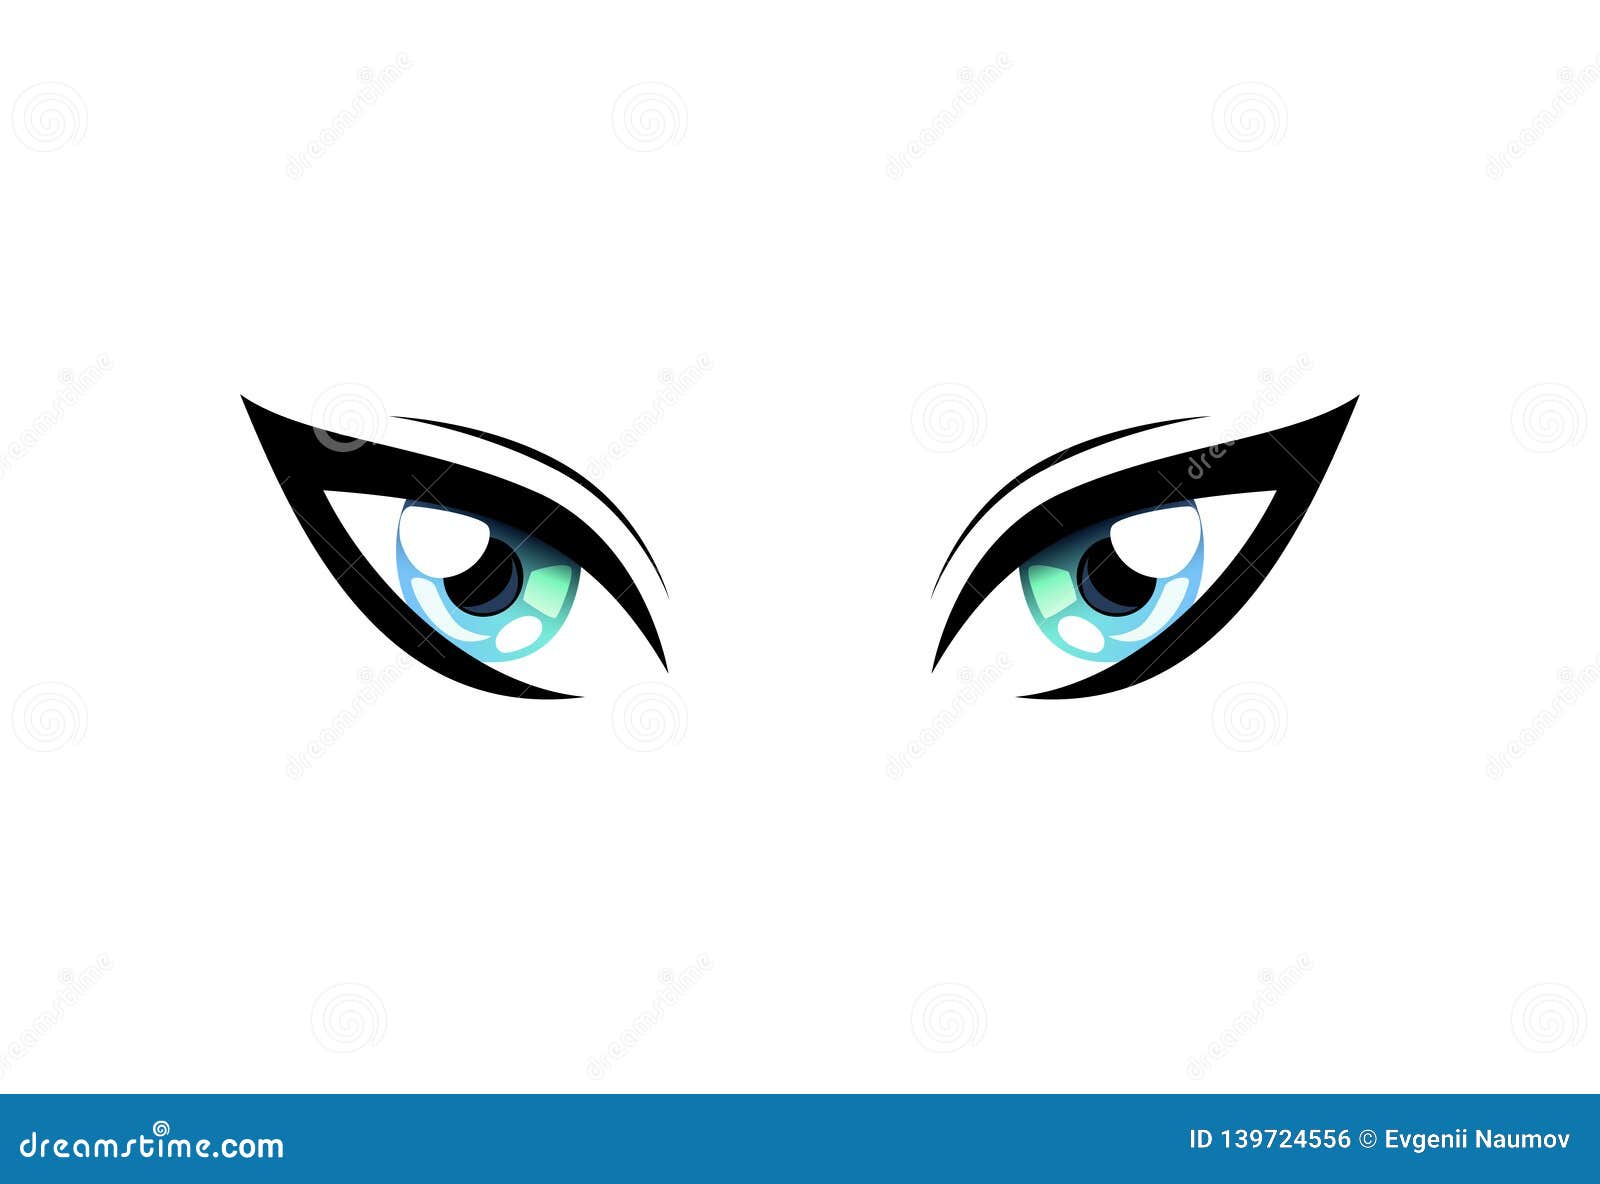 cat-eyes-hermosa-brillante-con-los-reflejos-de-luz-manga-japanese-style-vector-illustration-en-el-fondo-blanco-